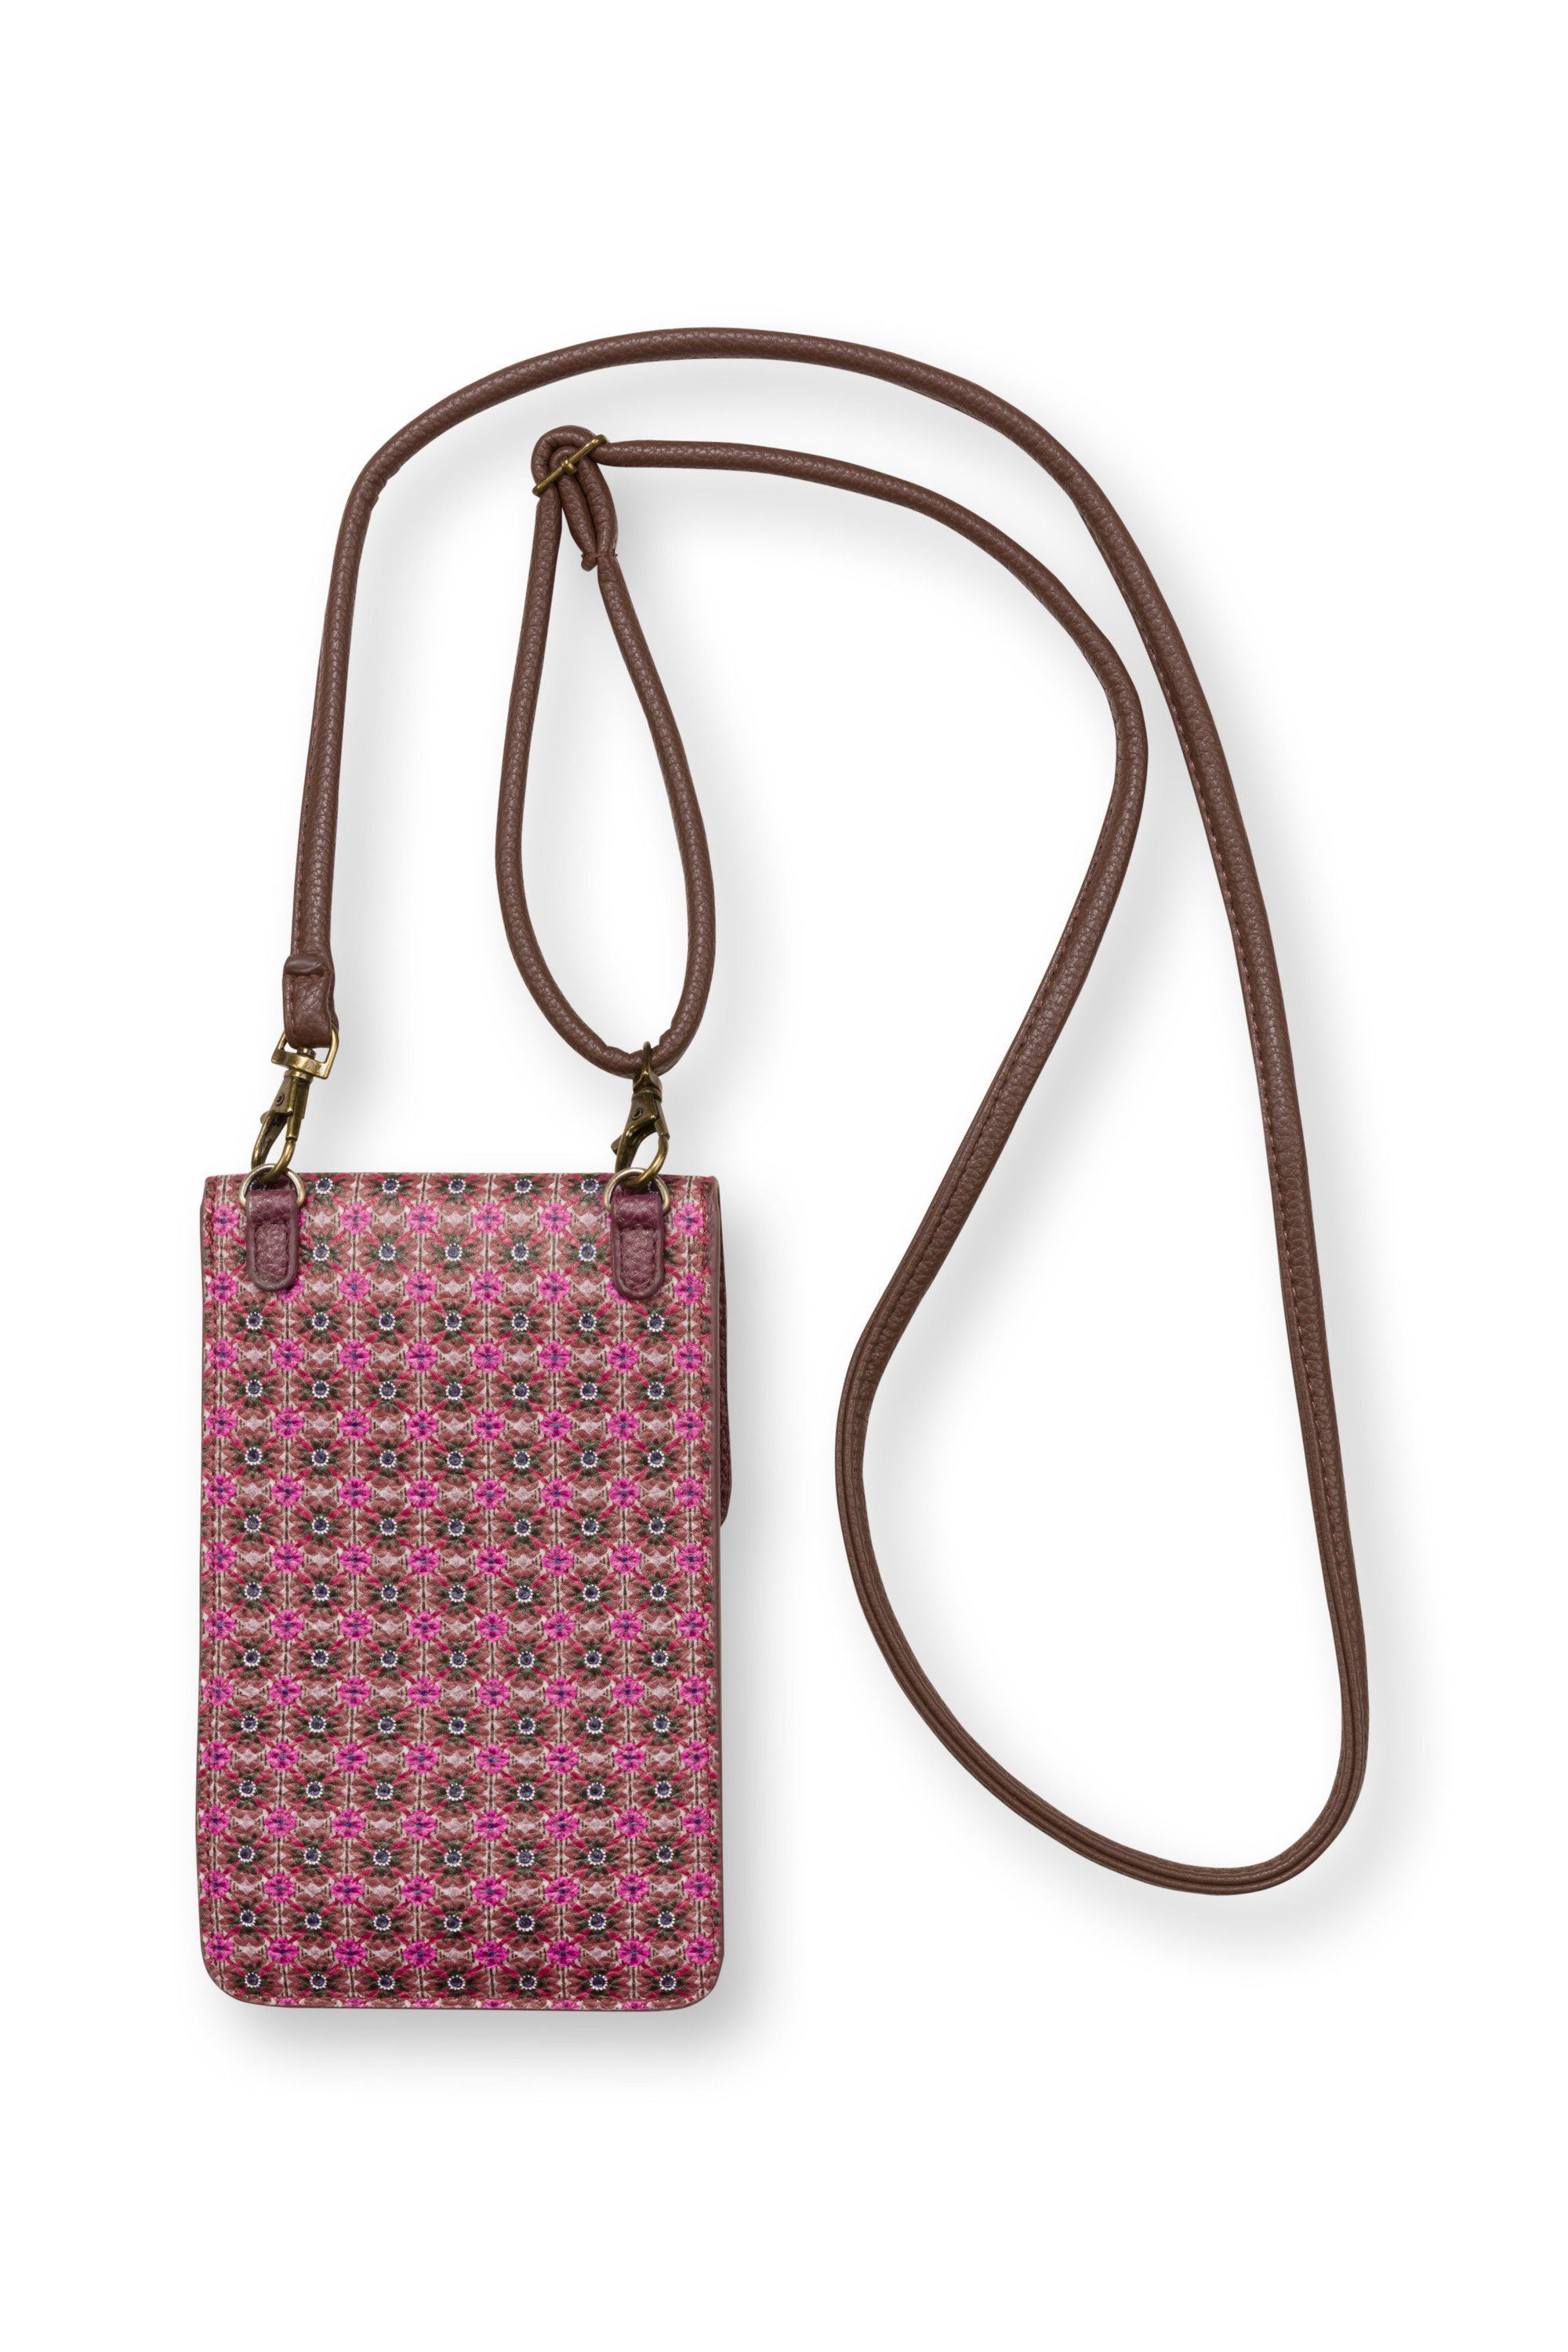 PiP Studio Smartphonetasche Handy pink x 18 Pip 11 cm, x Studio CLOVER, 1 Bag